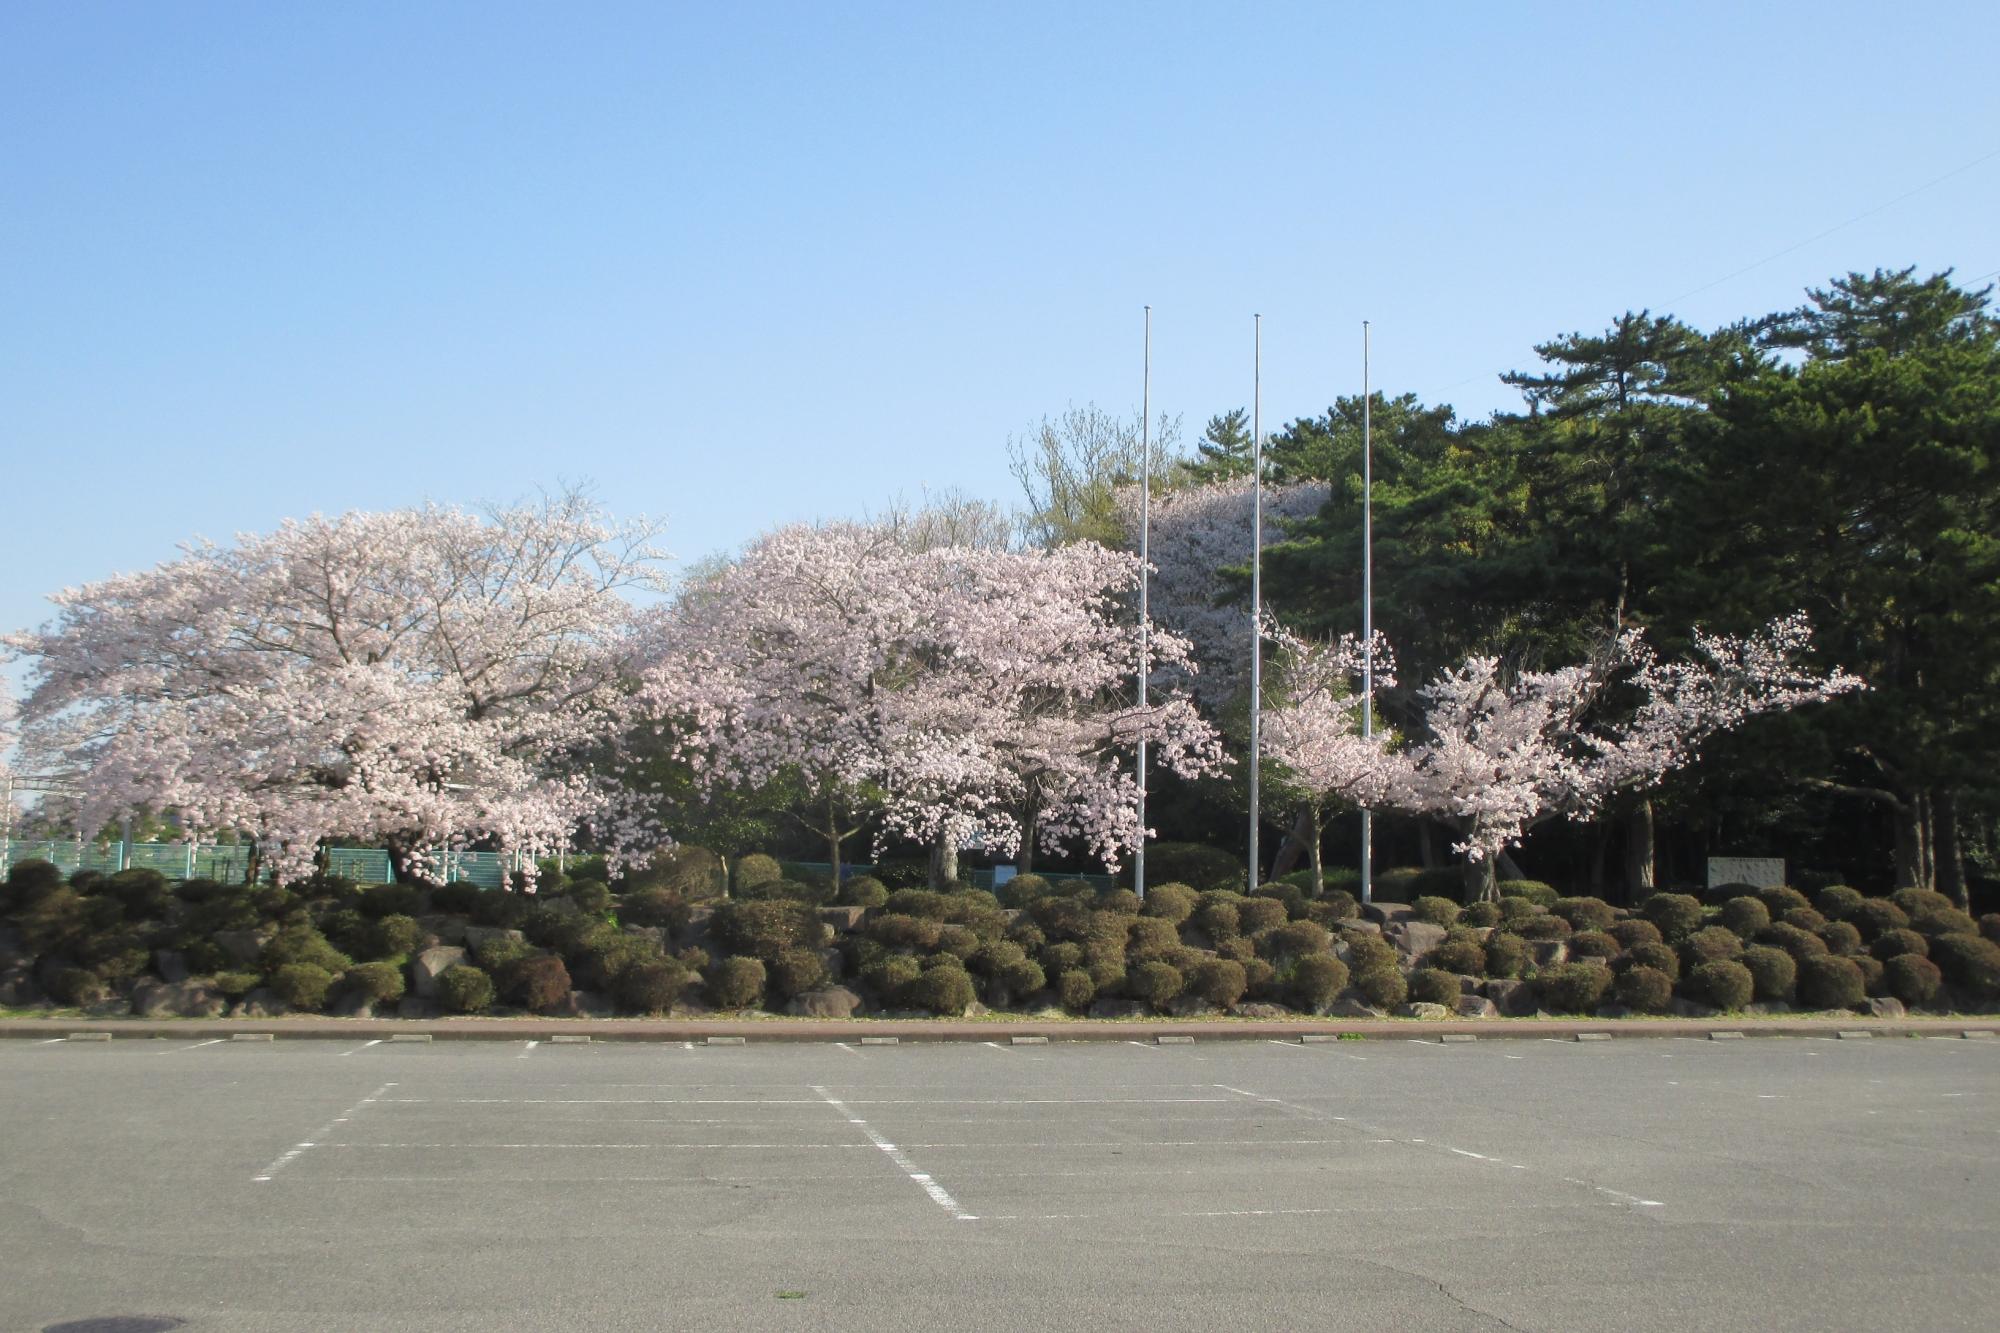 4月13日現在の桜の開花状況はこちらです！